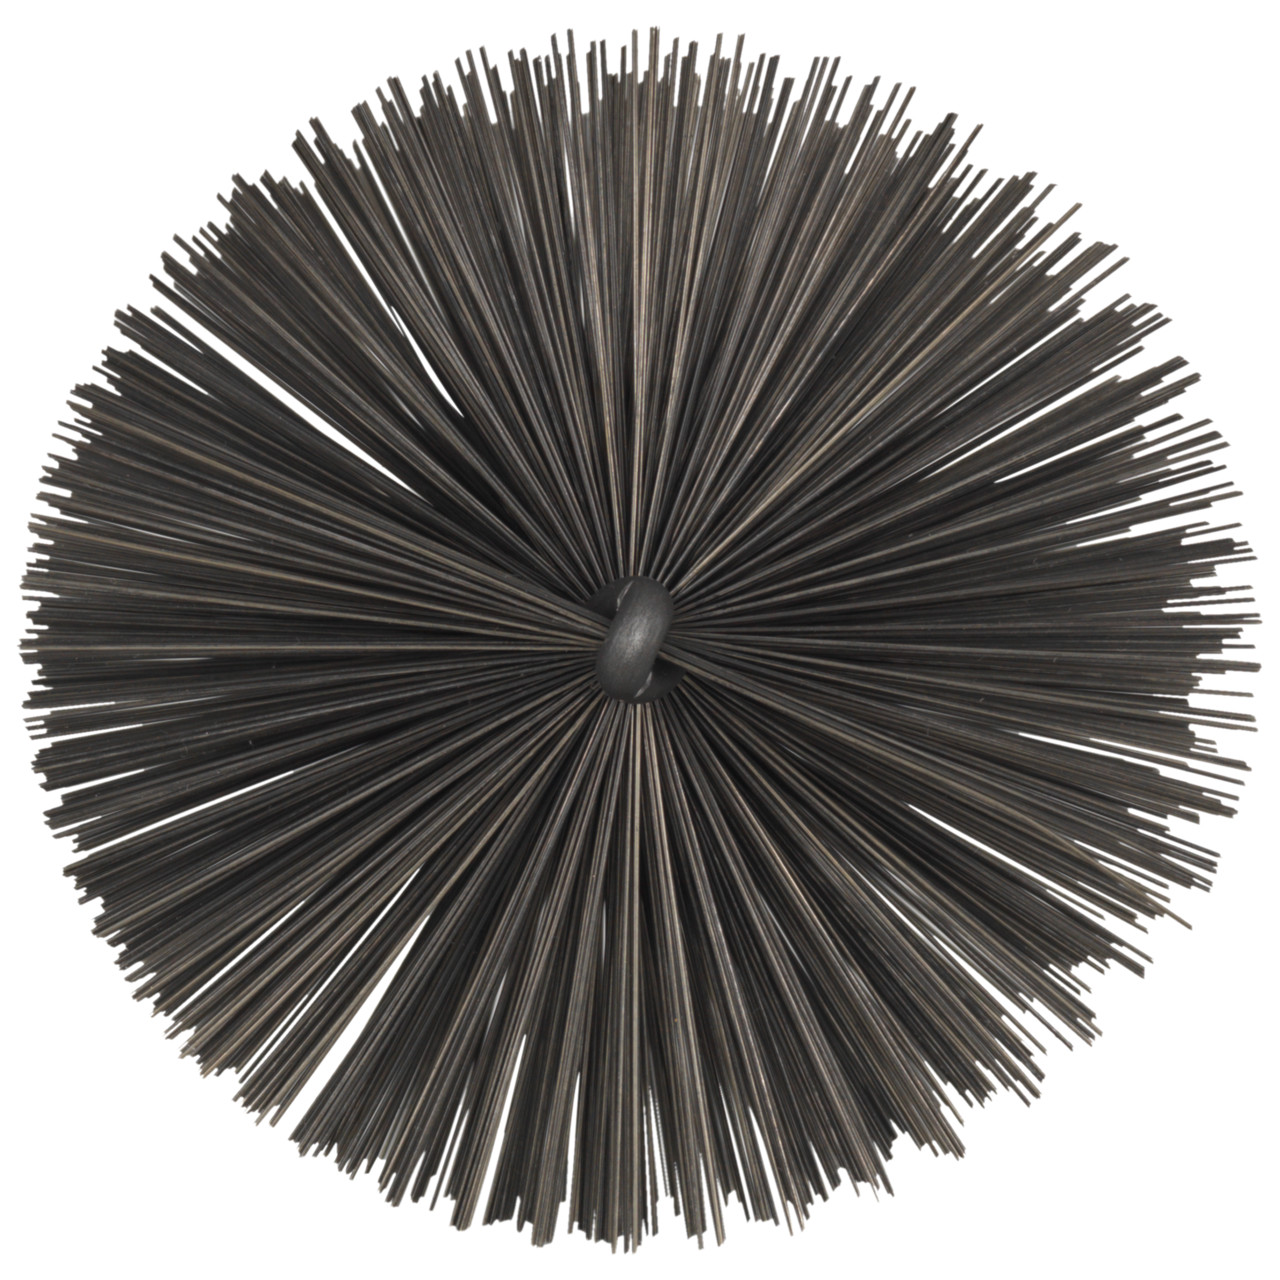 Tyrolit Brosse tubulaire avec filetage extérieur DxGE-I 40xW1/2-160 Pour l'acier, forme : 18ROGDG - (brosse tubulaire), art. 34203603